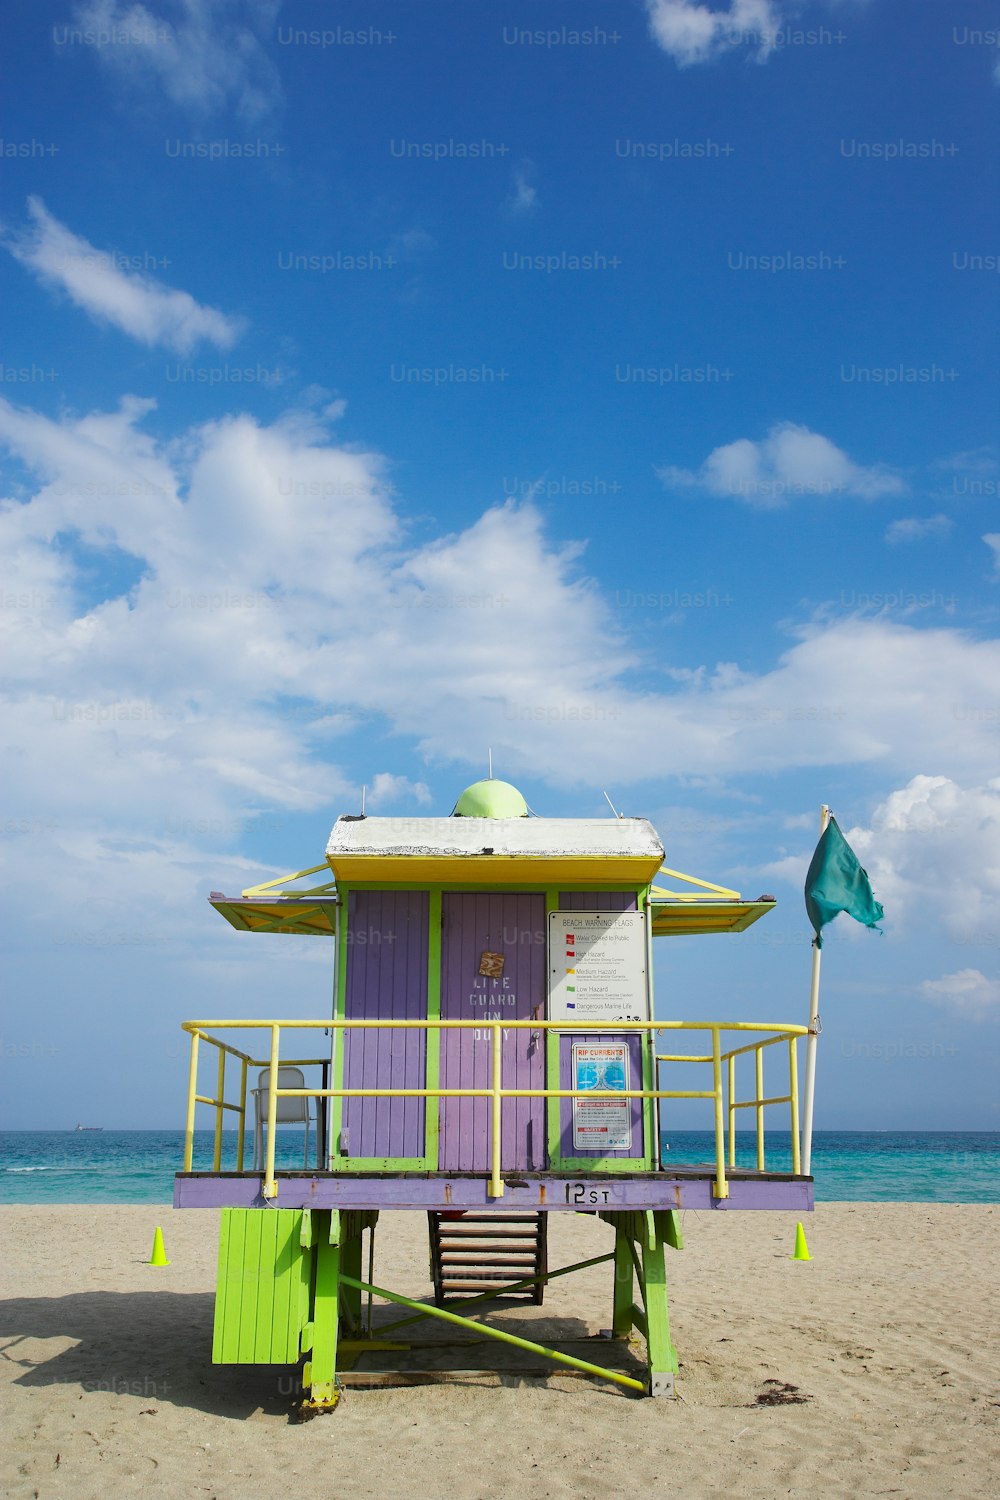 Un bagnino viola e verde si trova su una spiaggia